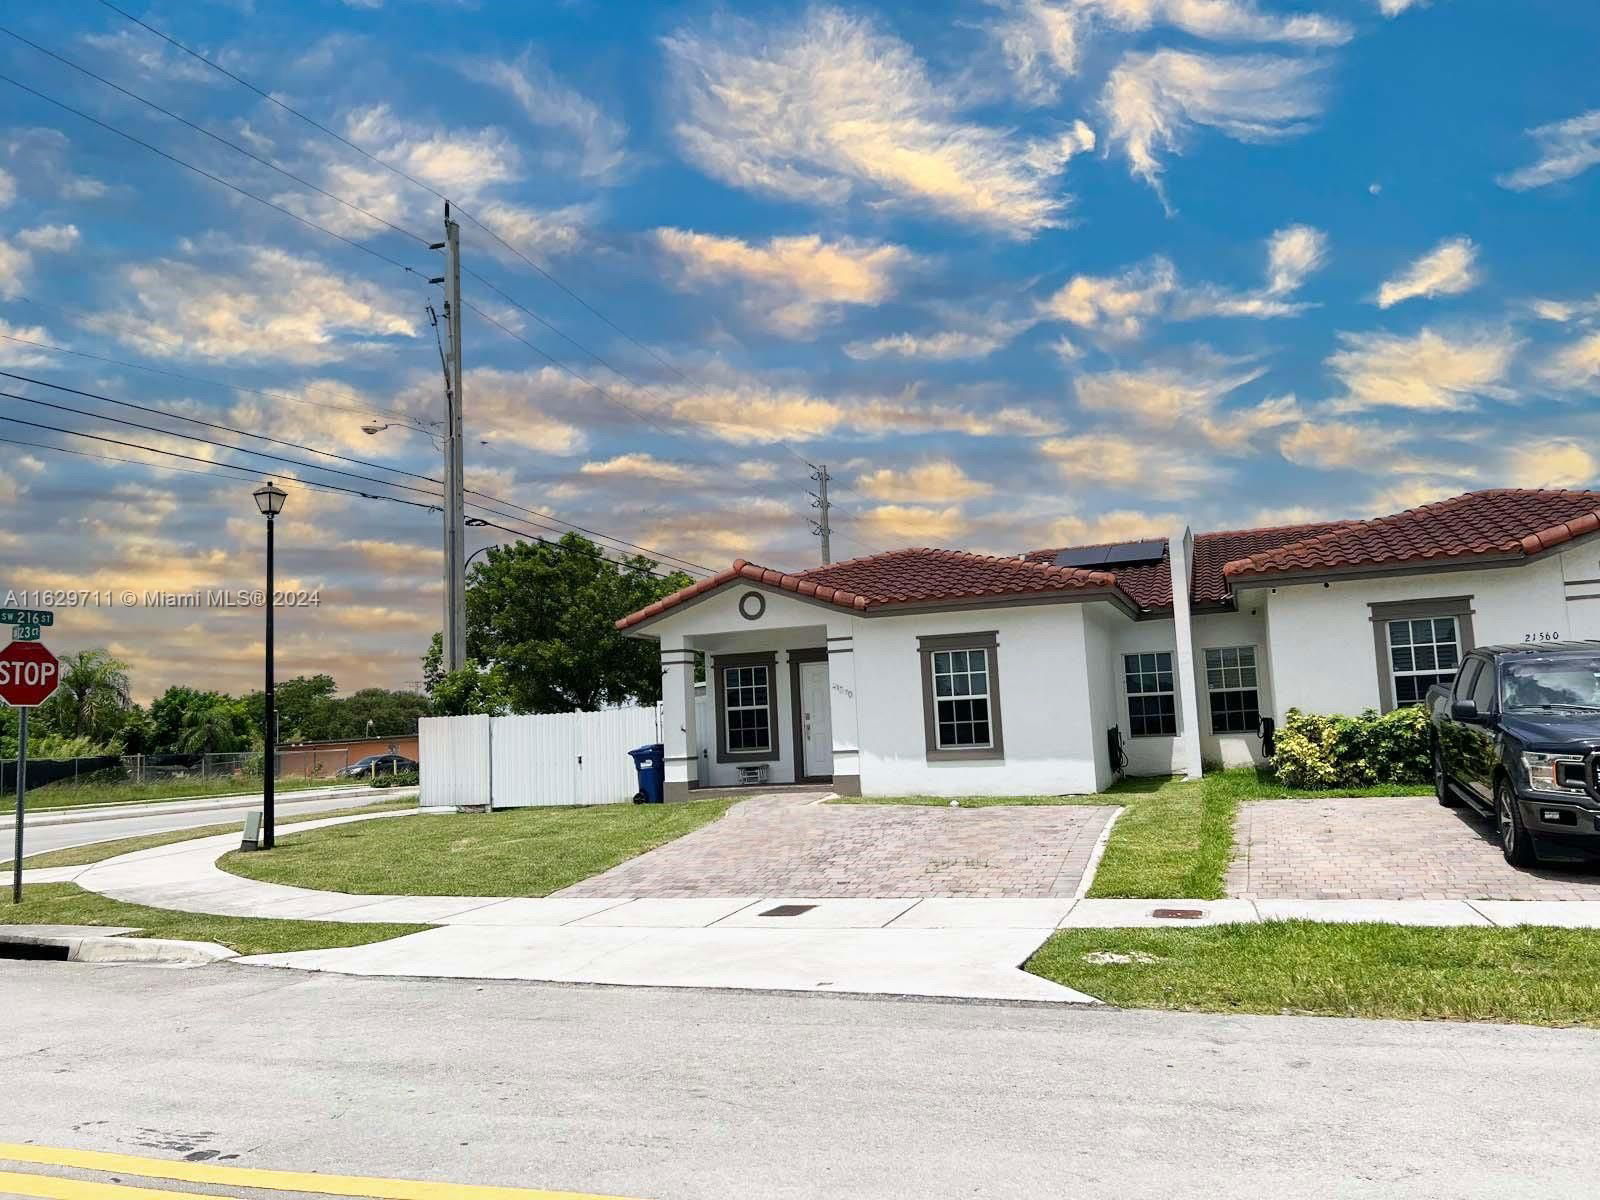 Real estate property located at 21570 123rd Ct, Miami-Dade County, DE CAYON SUBDIVISION, Miami, FL